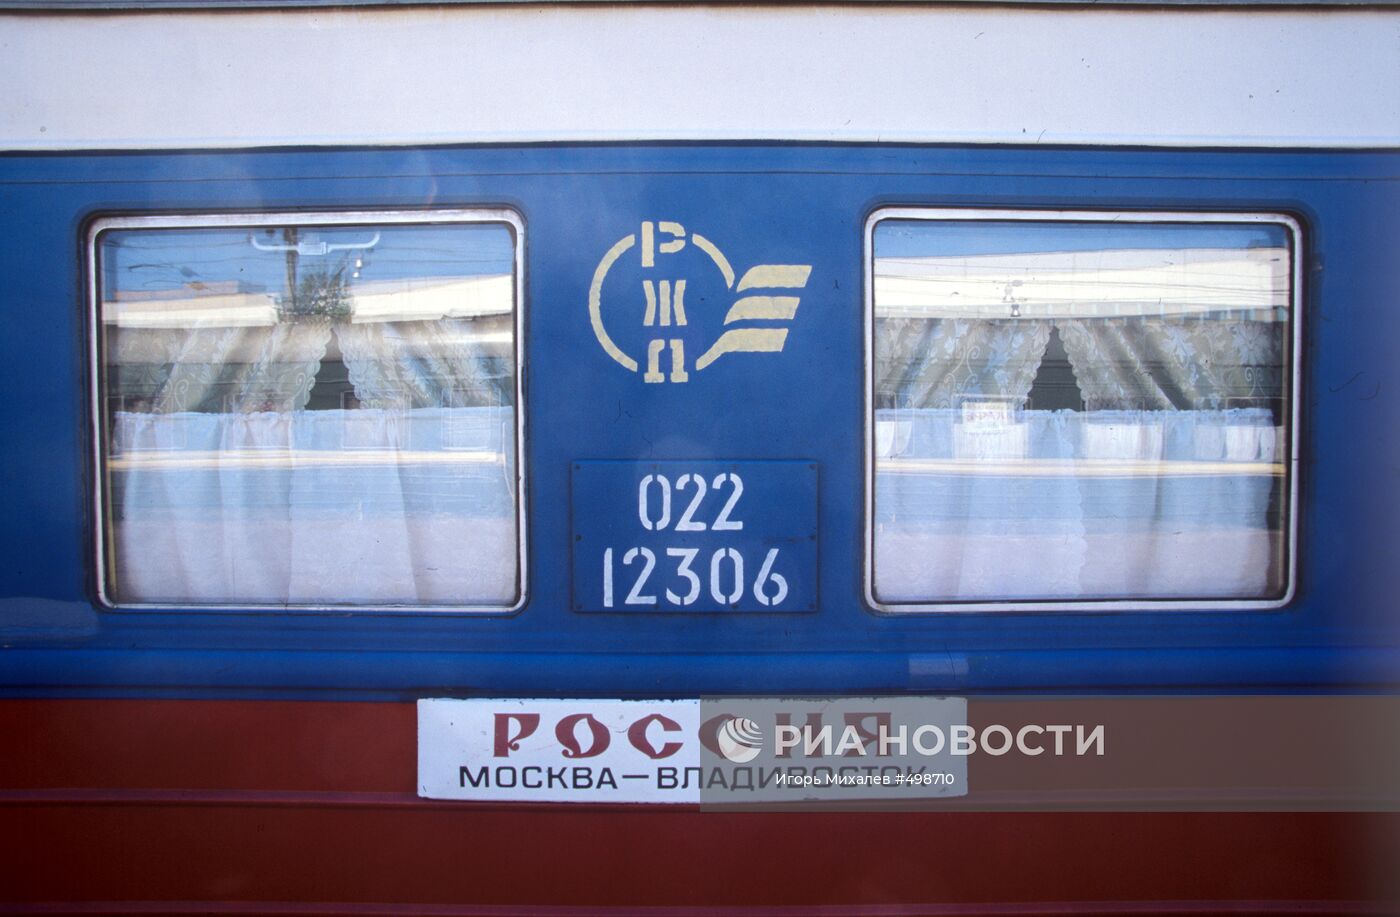 Фирменный поезд "Россия"